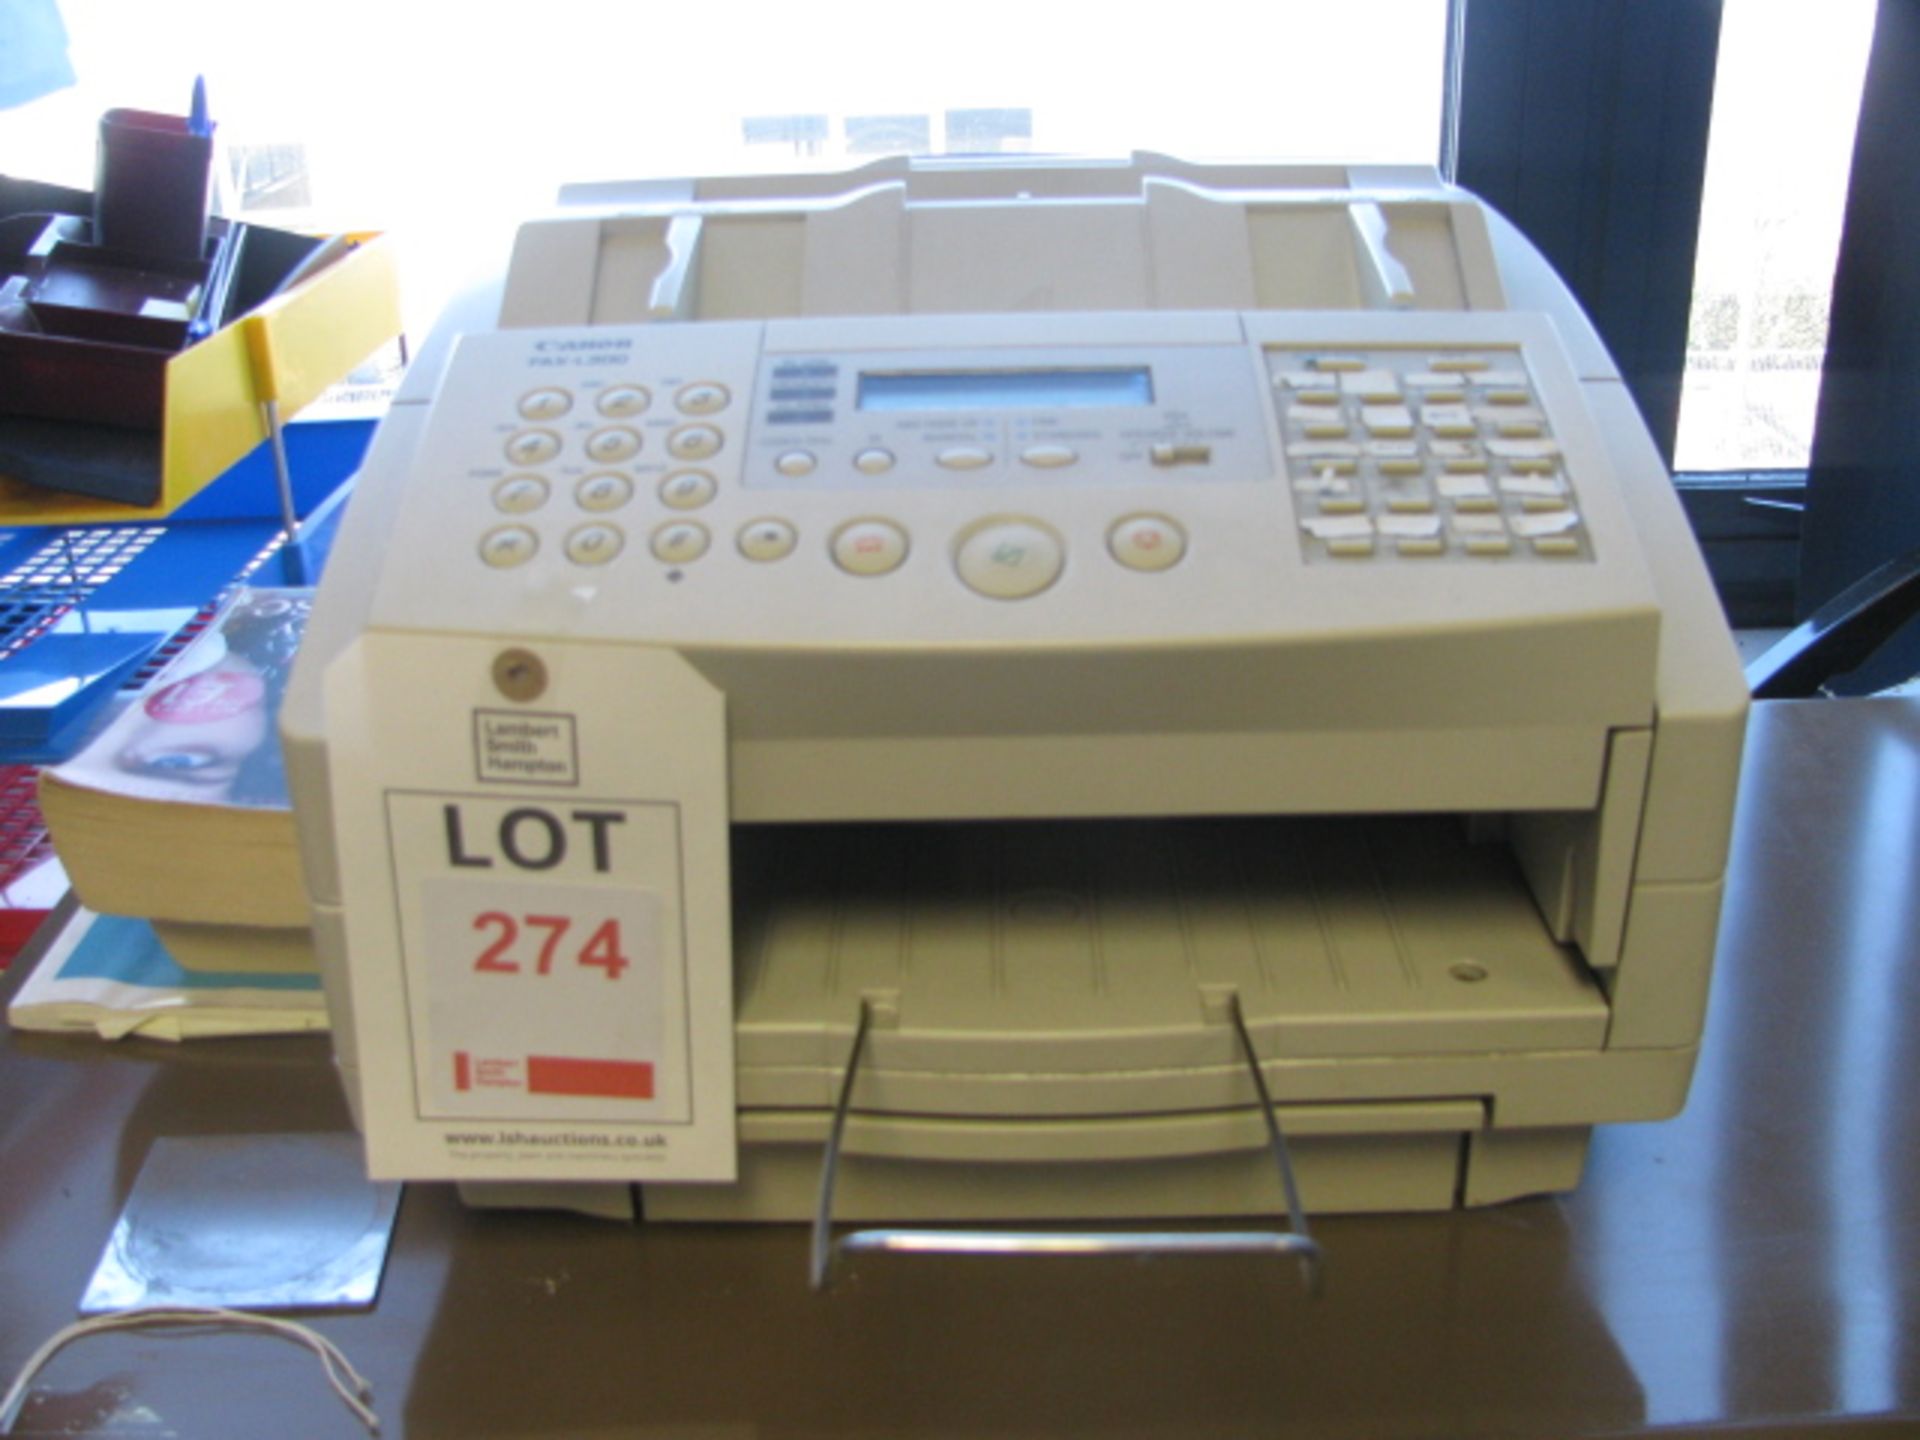 Canon fax L300 fax machine